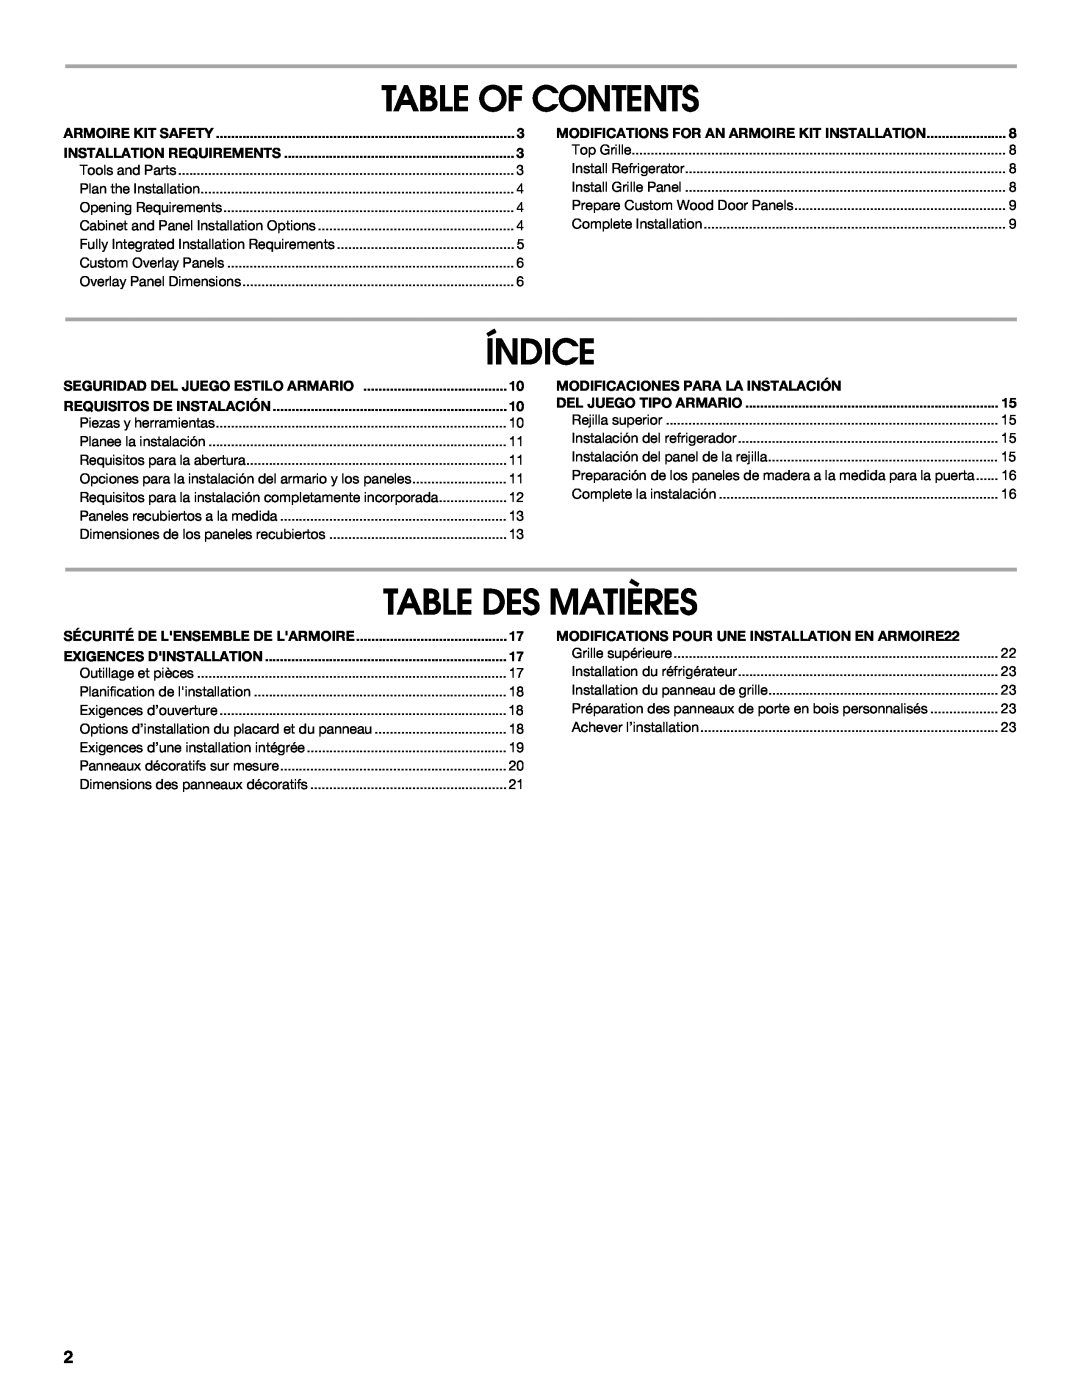 Jenn-Air W10295557C Table Of Contents, Índice, Table Des Matières, Seguridad Del Juego Estilo Armario 